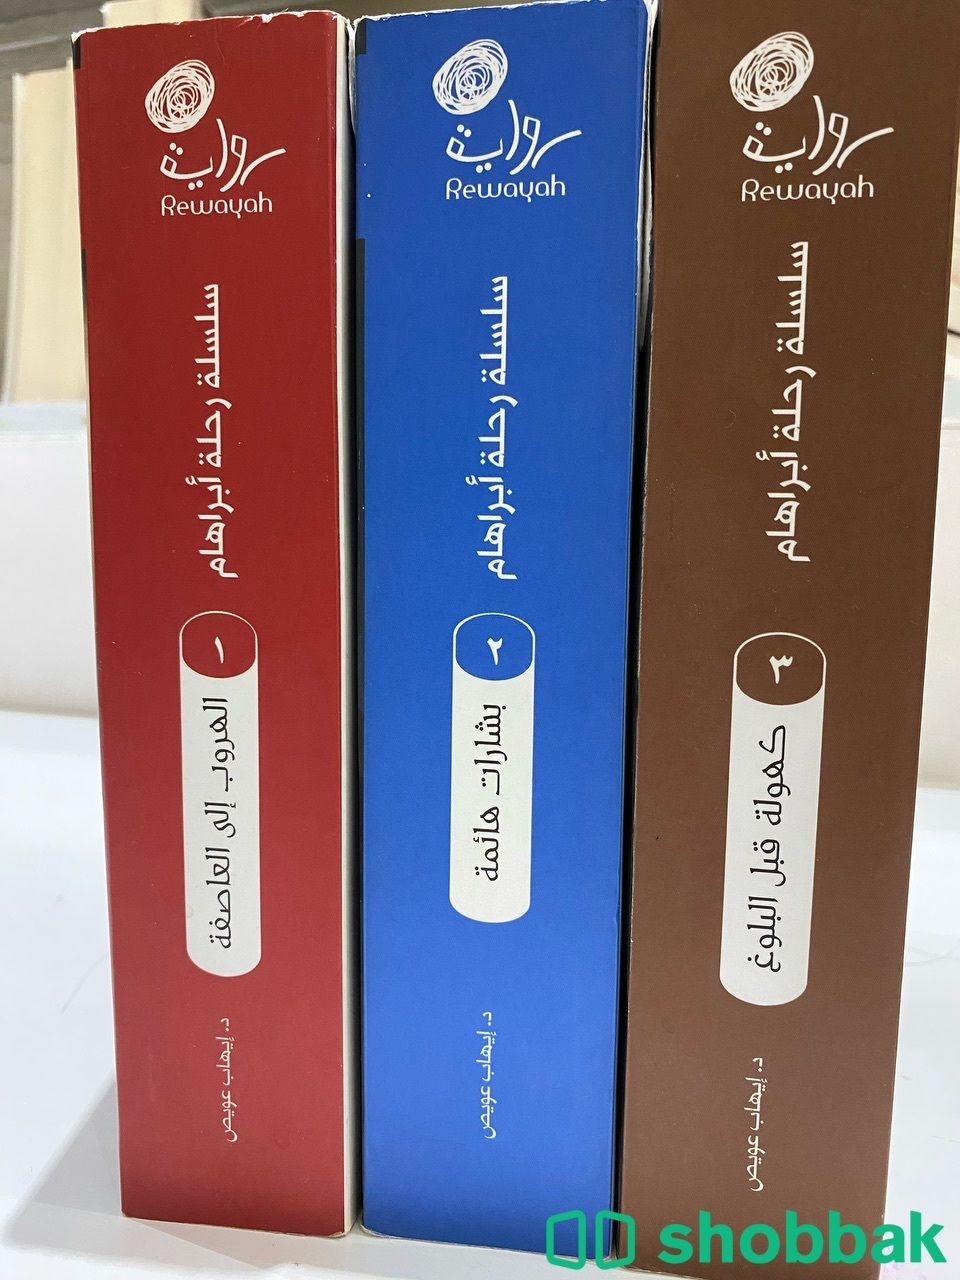 سلسلة روايات (رحلة أبراهام) - إيهاب عويص Shobbak Saudi Arabia